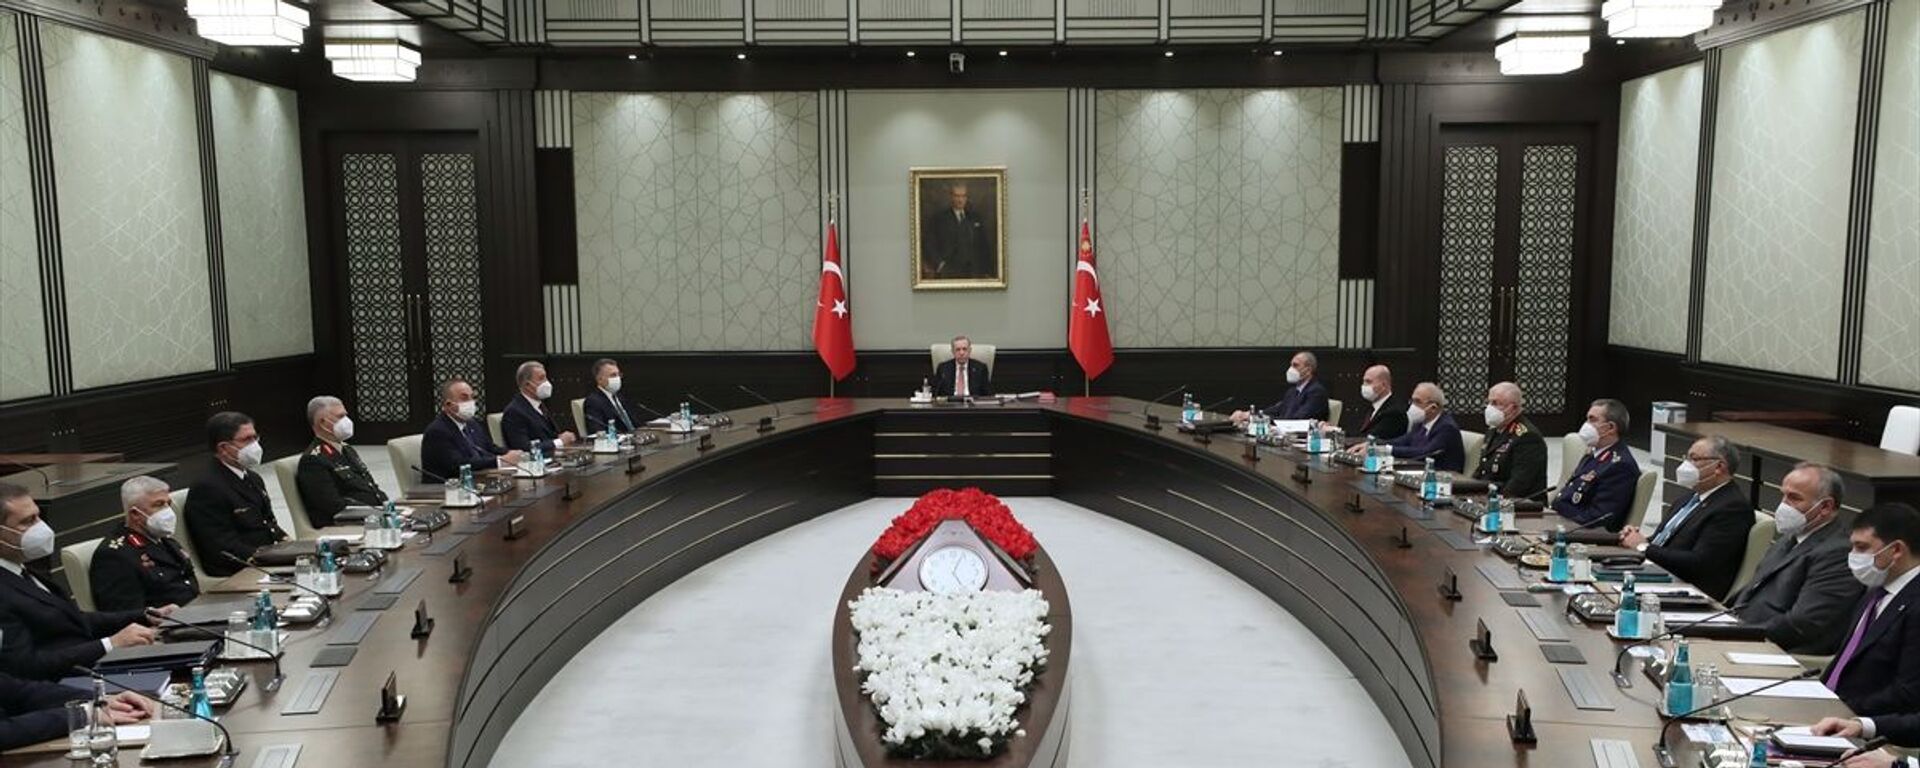 Milli Güvenlik Kurulu (MGK), Cumhurbaşkanı Recep Tayyip Erdoğan başkanlığında toplandı. - Sputnik Türkiye, 1920, 05.08.2021